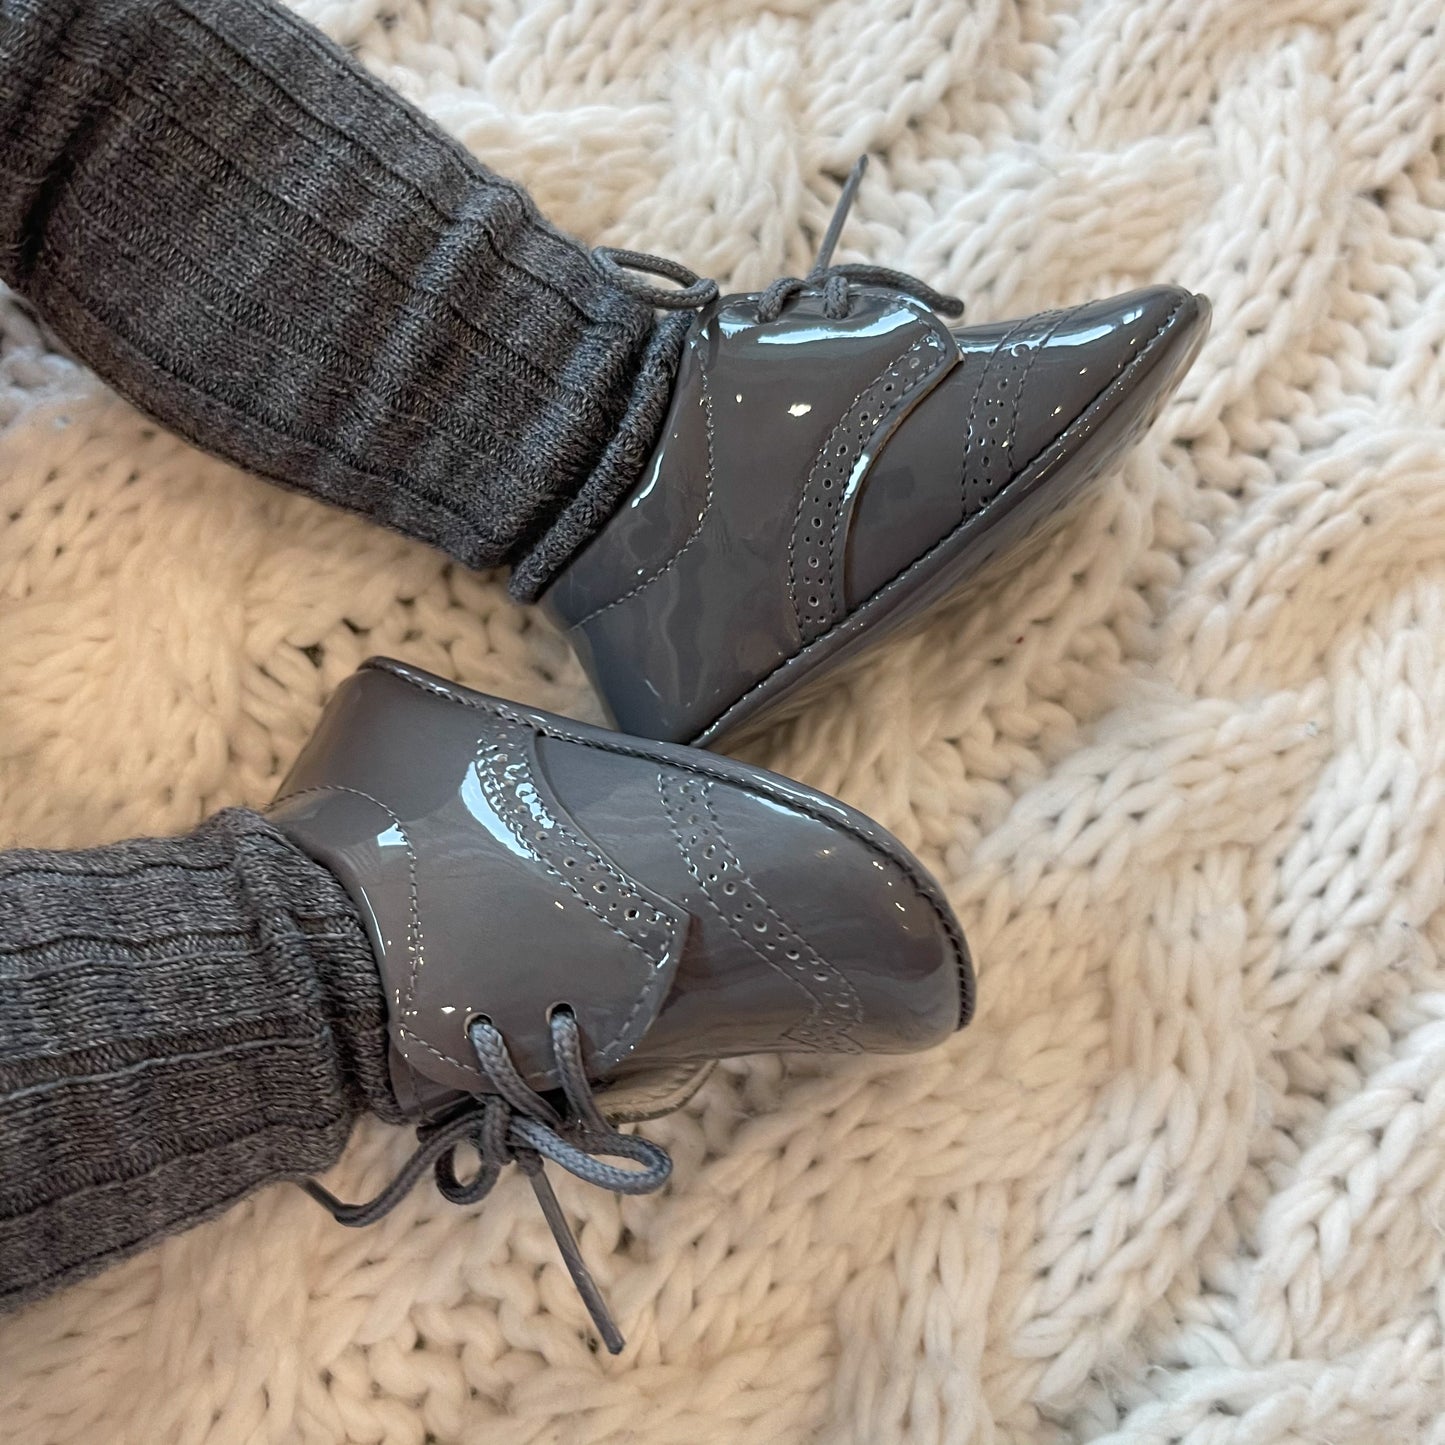 CÓNDOR Merino Wool-Blend Rib Knee Socks- Light Grey